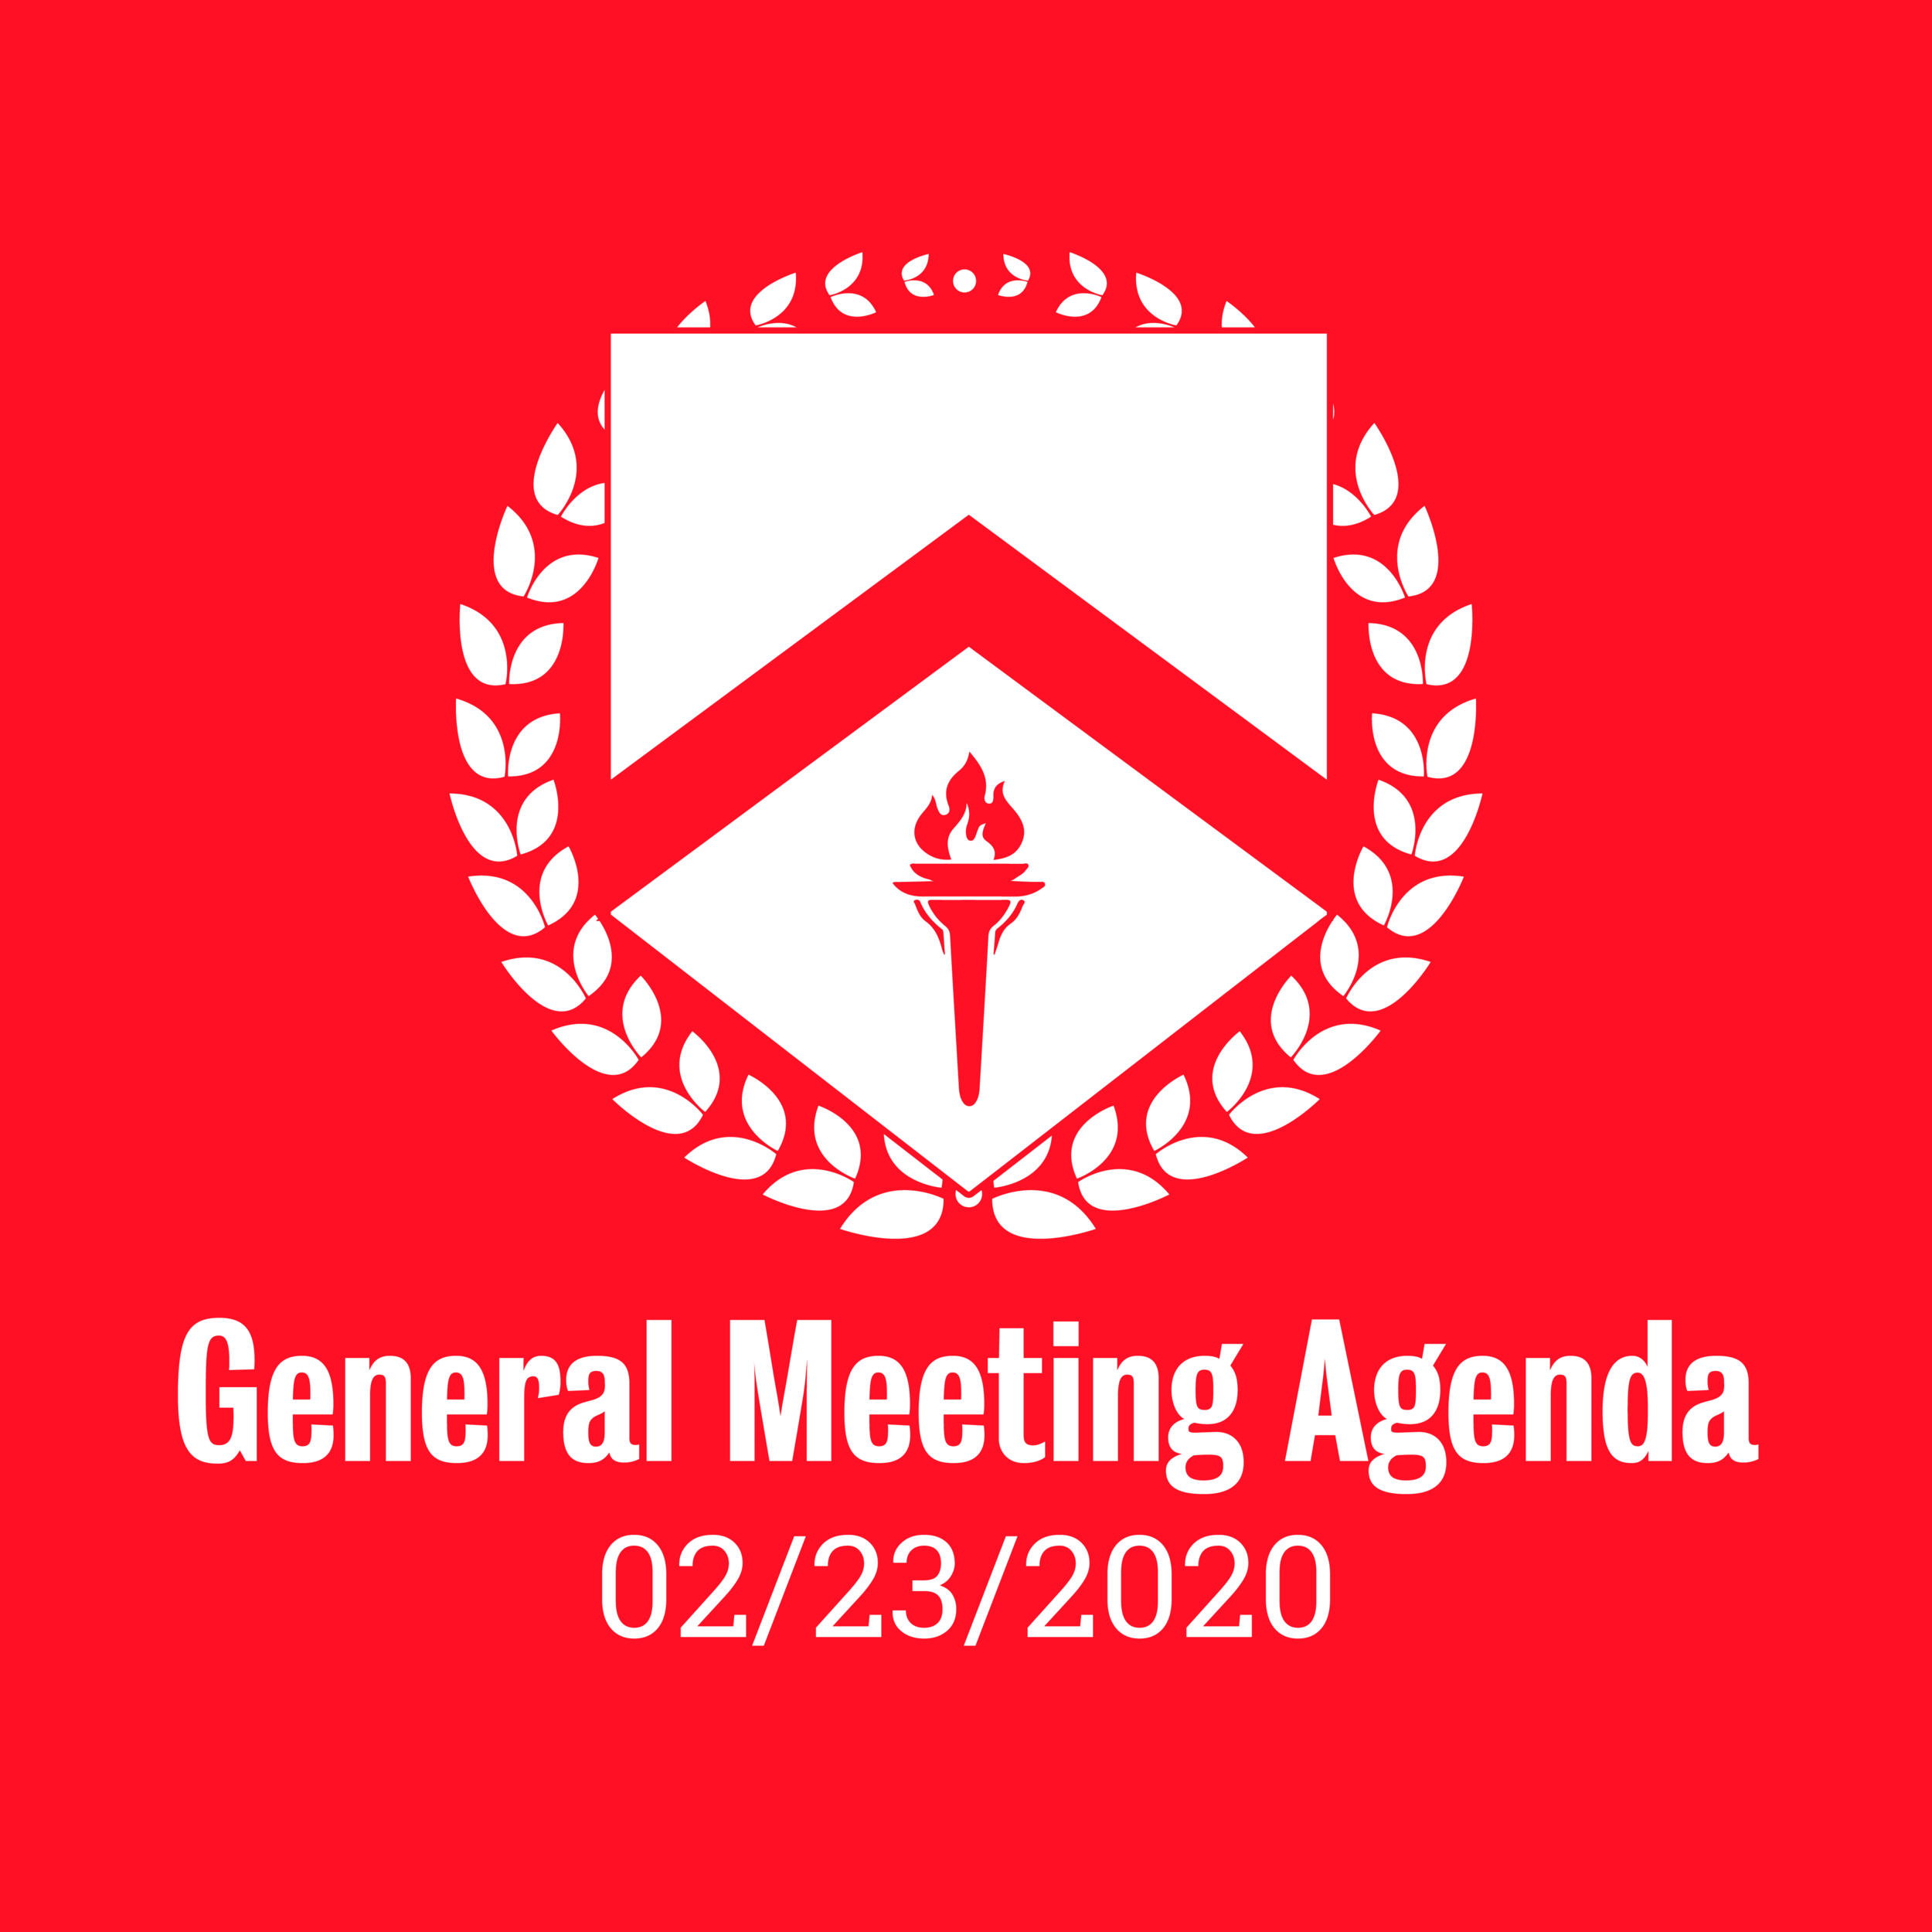 General Meeting Agenda 02/23/2020